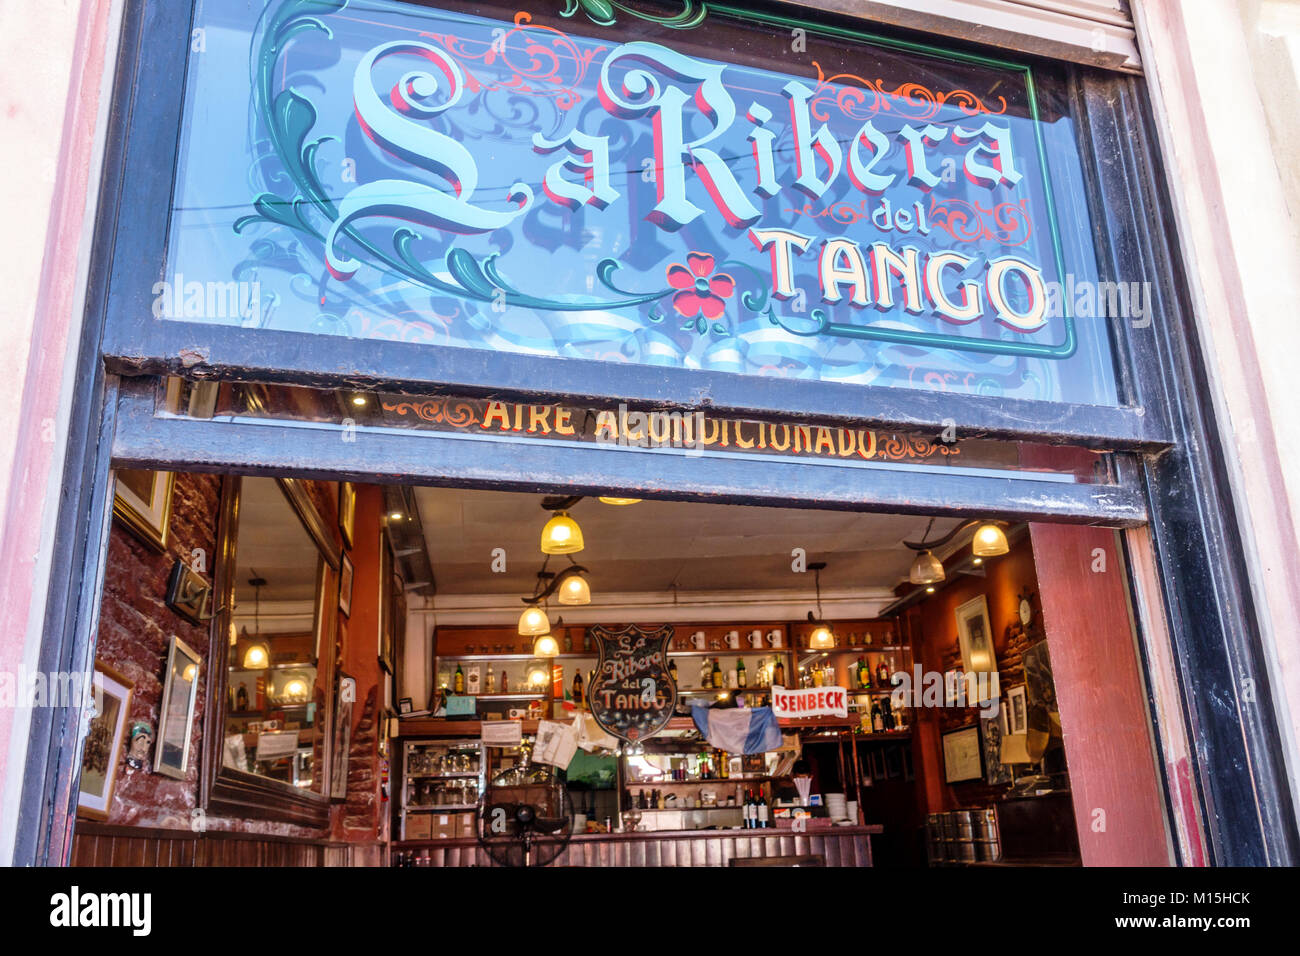 Buenos Aires Argentina, Caminito Barrio de la Boca, la Ribera del Tango, ristorante ristoranti cibo ristoranti caffè, bar lounge pub, ingresso, insegna, Hispa Foto Stock